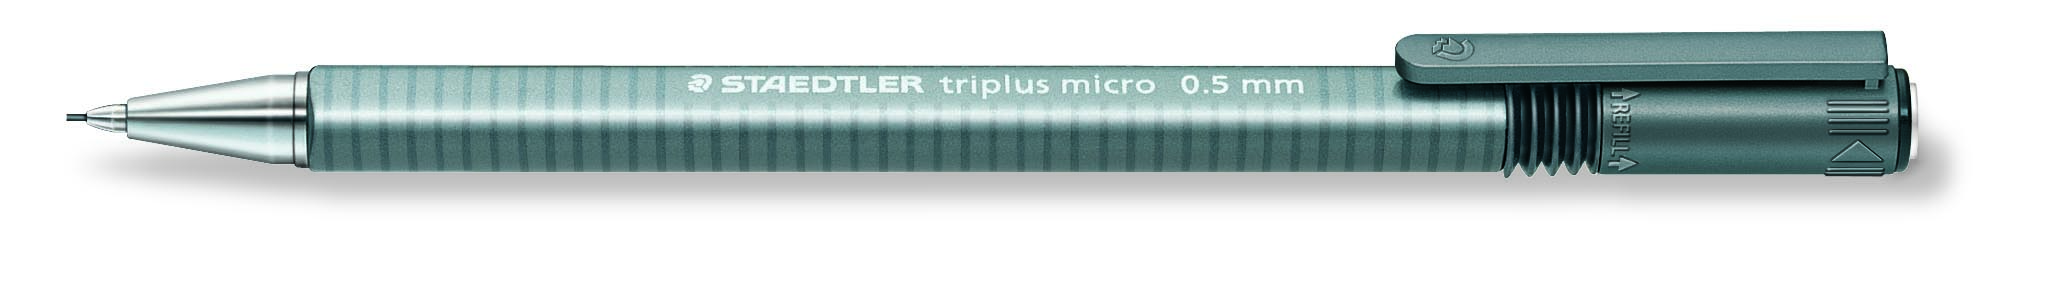 STAEDTLER Stiftblyant Triplus Micro 0,5mm grå